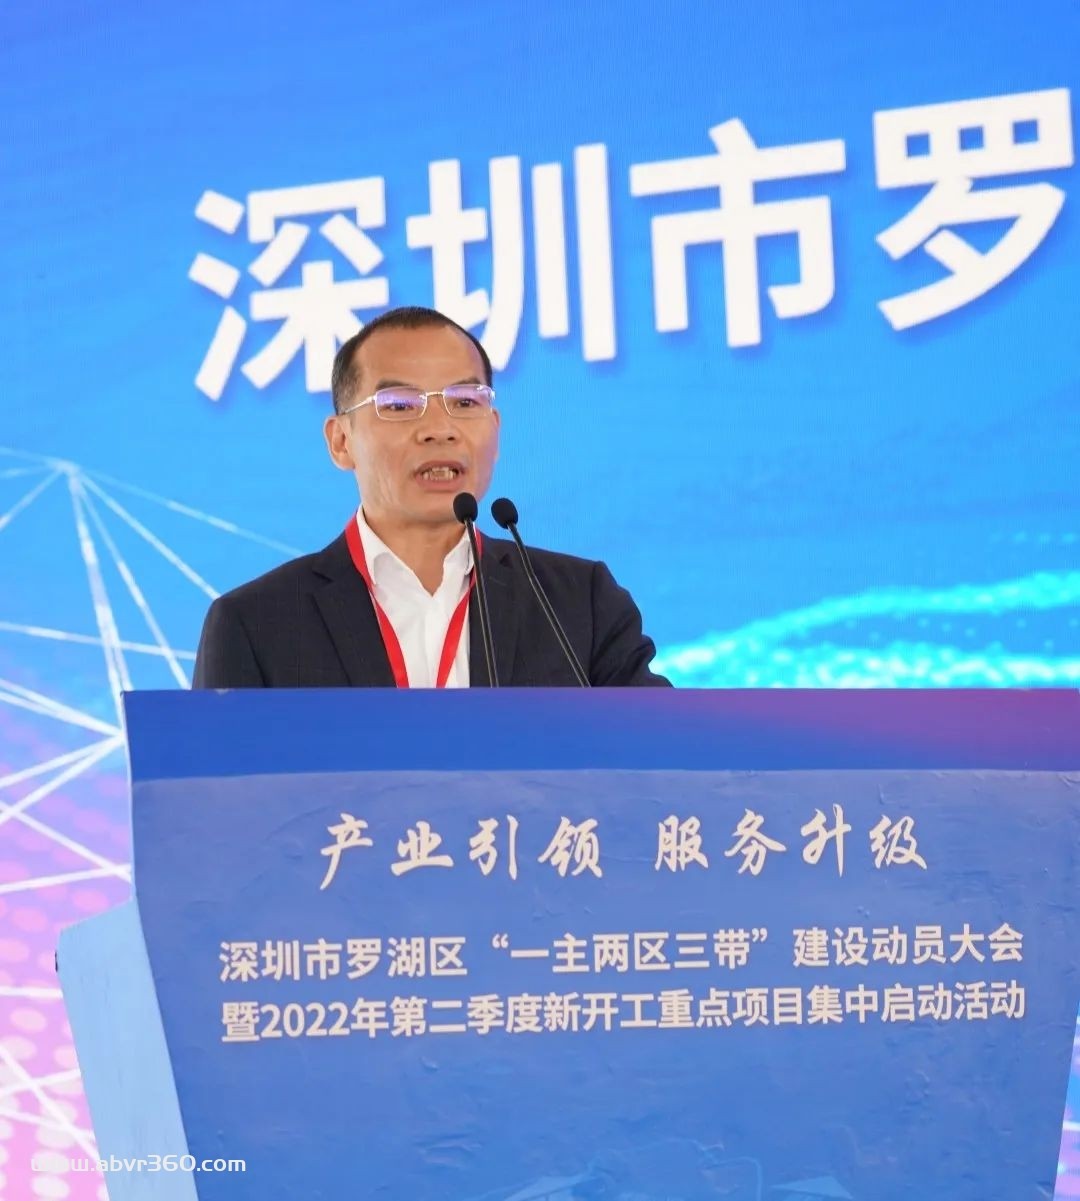 闻泰科技将在深圳设立华南总部